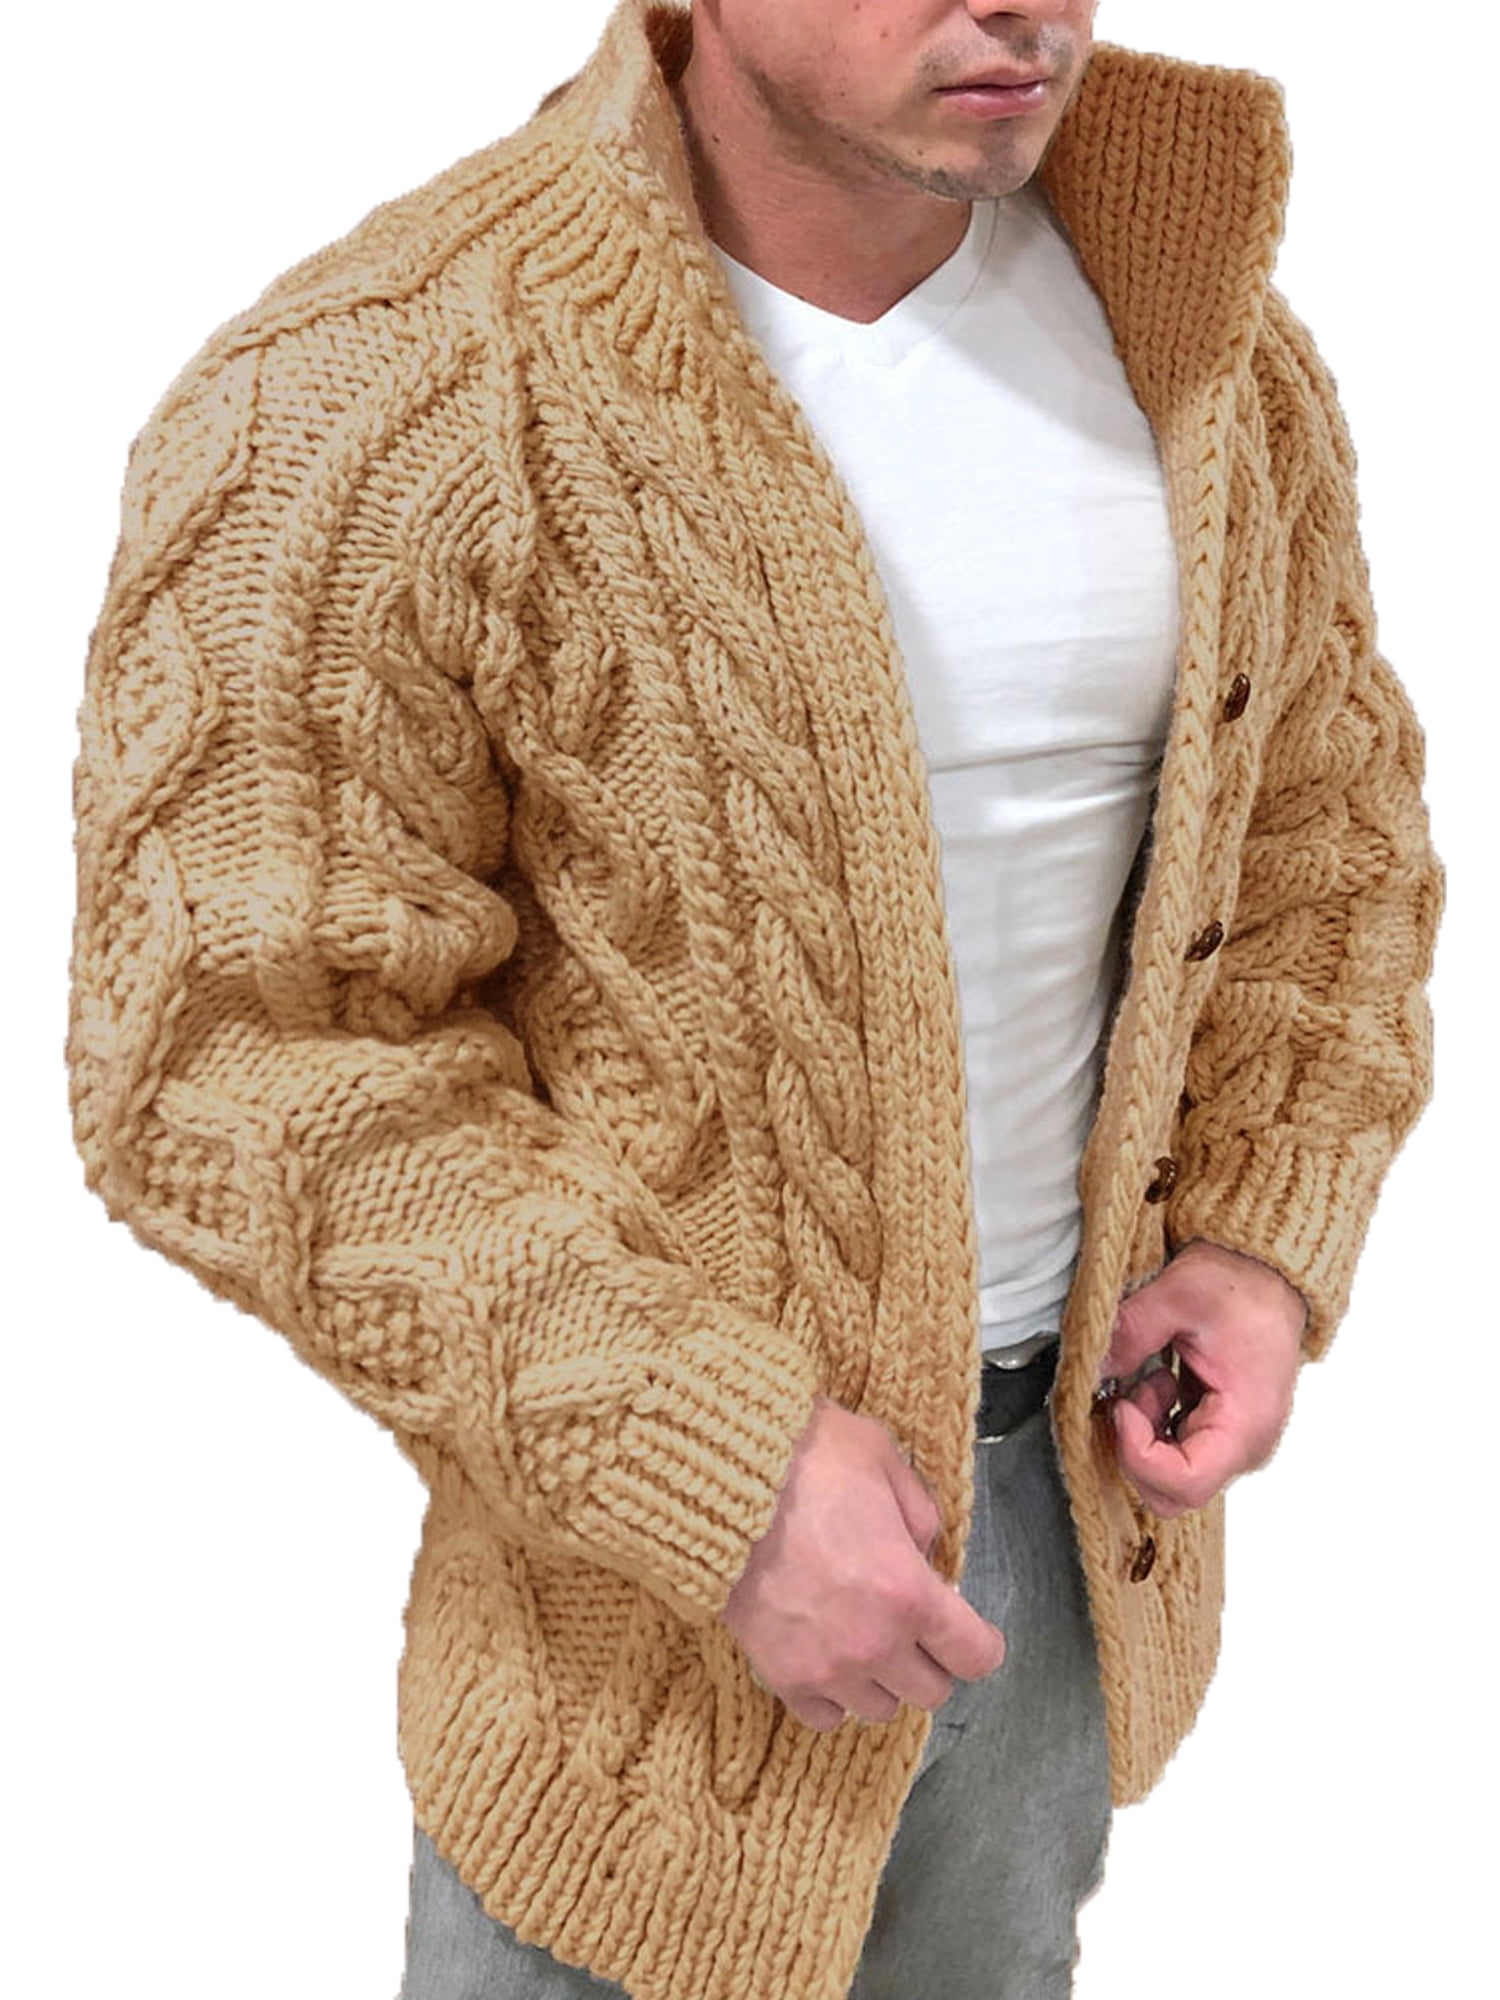 Long Sleeve Outwear Sweater Plain Knitted Cardigan Mens Open Winter Coats Jacket 